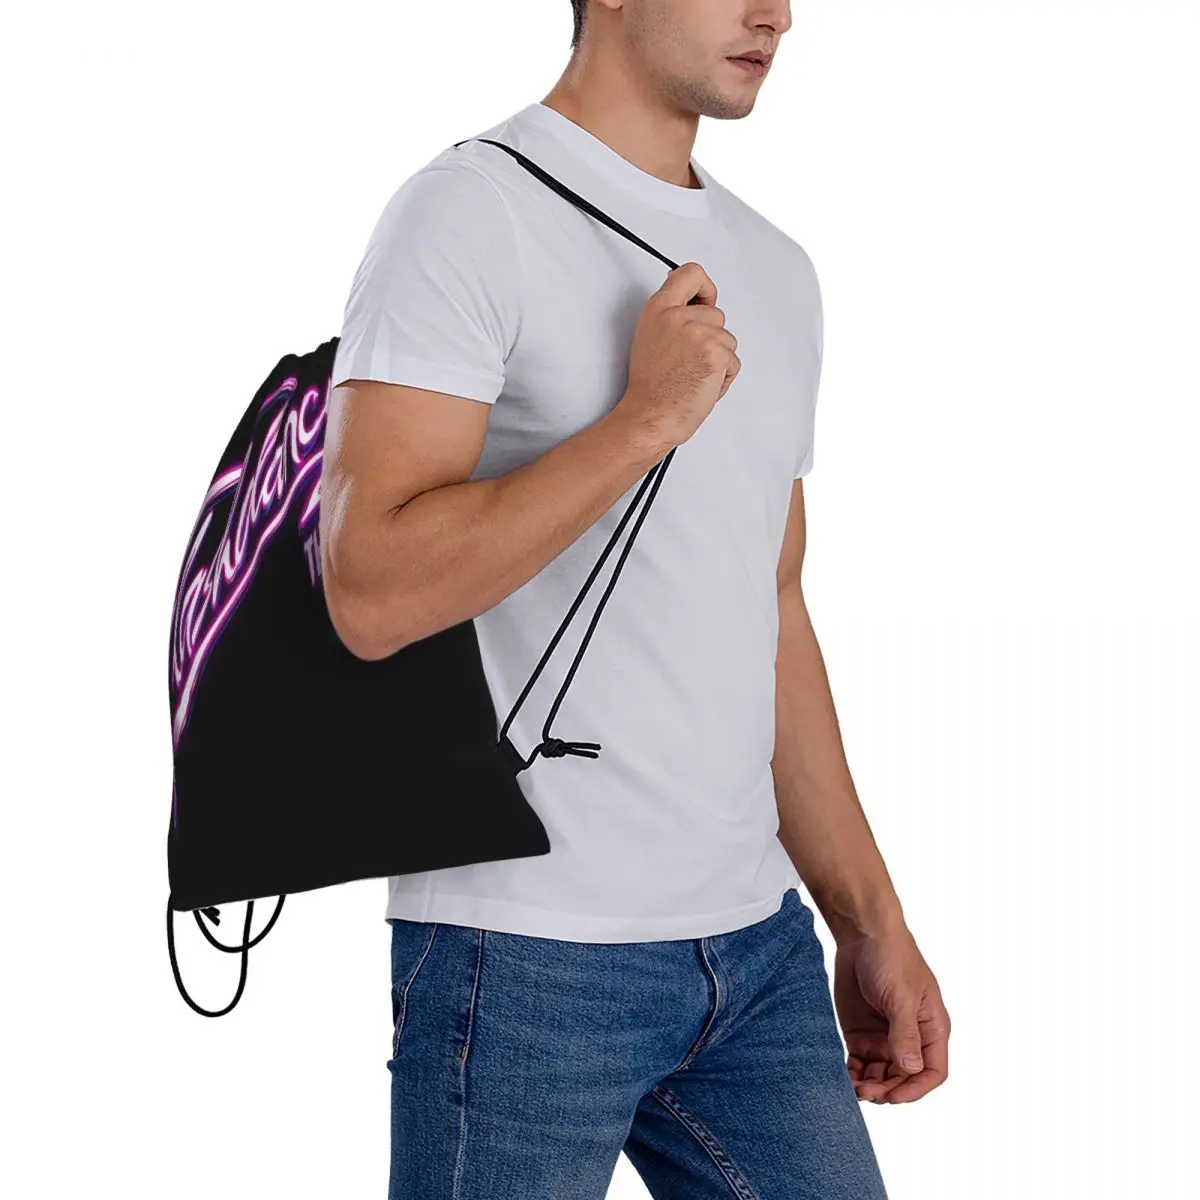 Рюкзаки на шнурках, предназначенные для мужчин, Идеальные сумки для школы, кемпинга, пеших прогулок и приключений на свежем воздухе . ' - ' . 4